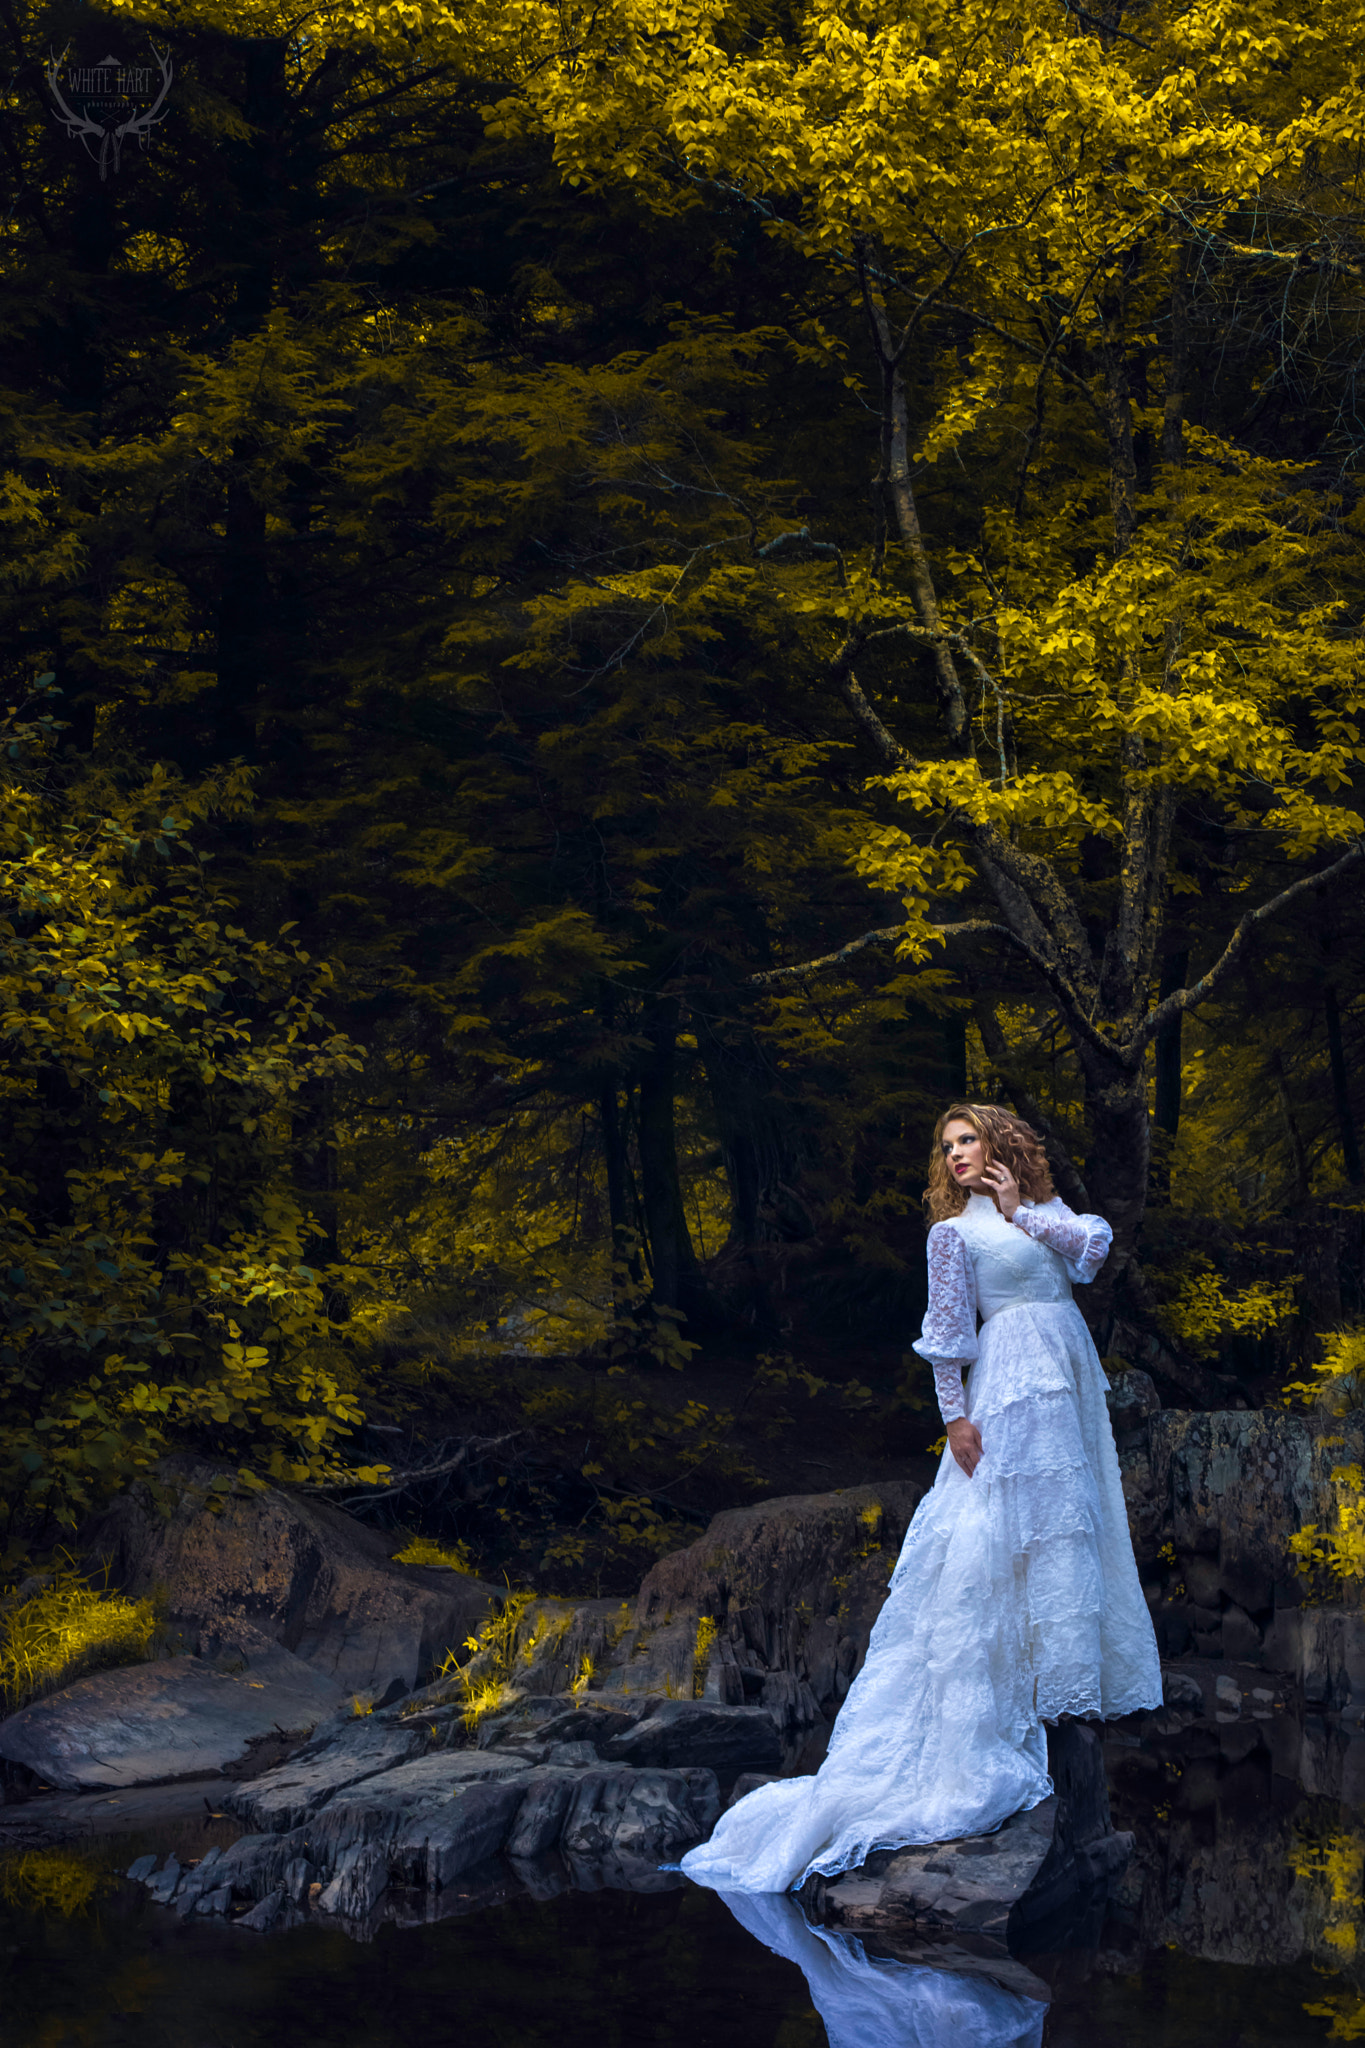 Nikon D7100 + AF Nikkor 50mm f/1.4 sample photo. Brides of the north woods photography